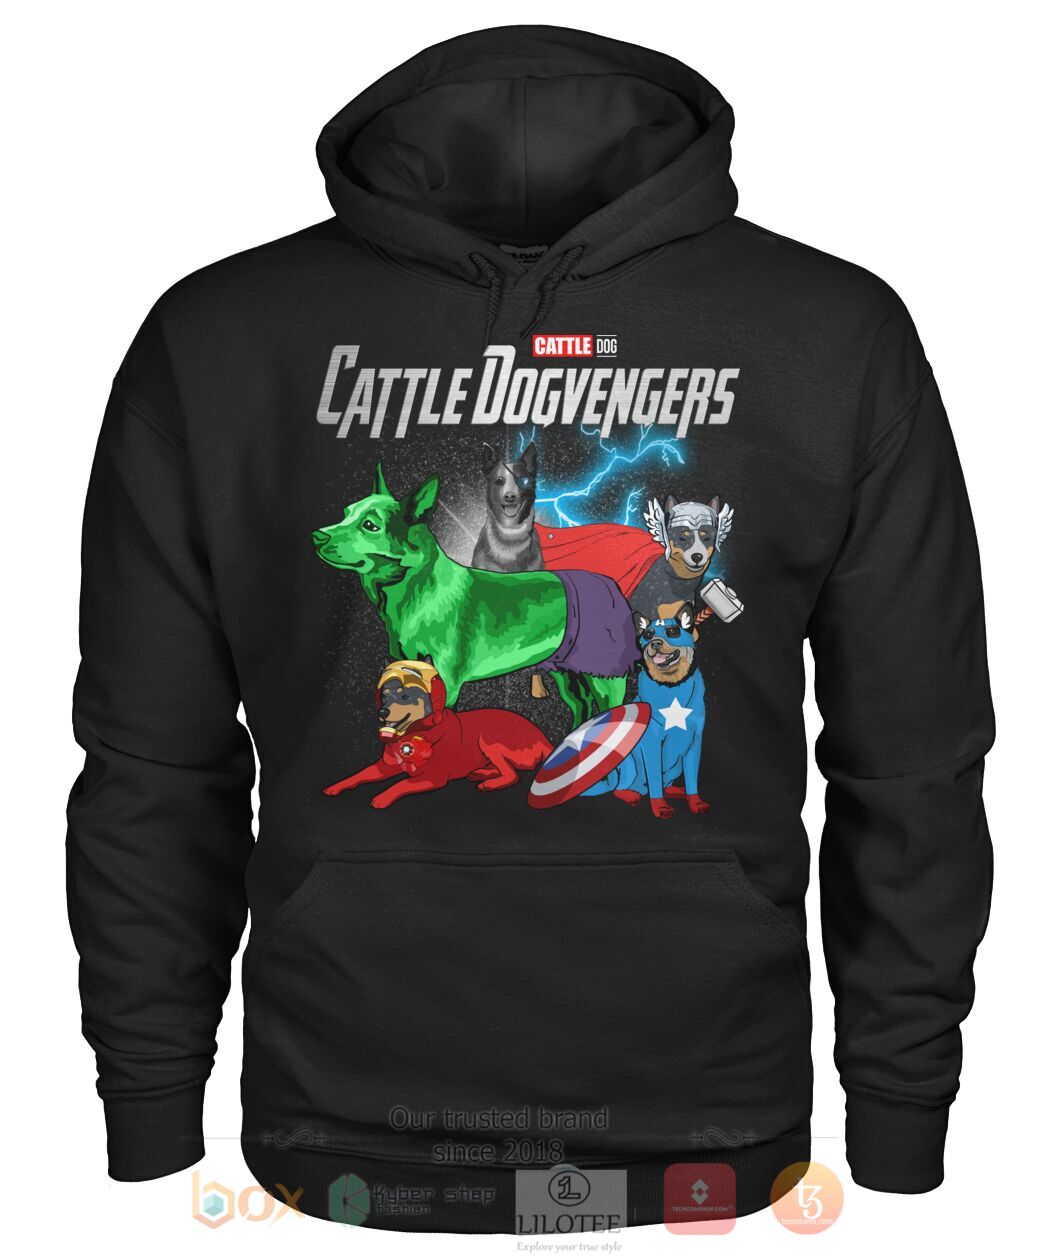 Cattle Dogvengers 3D Hoodie Shirt 1